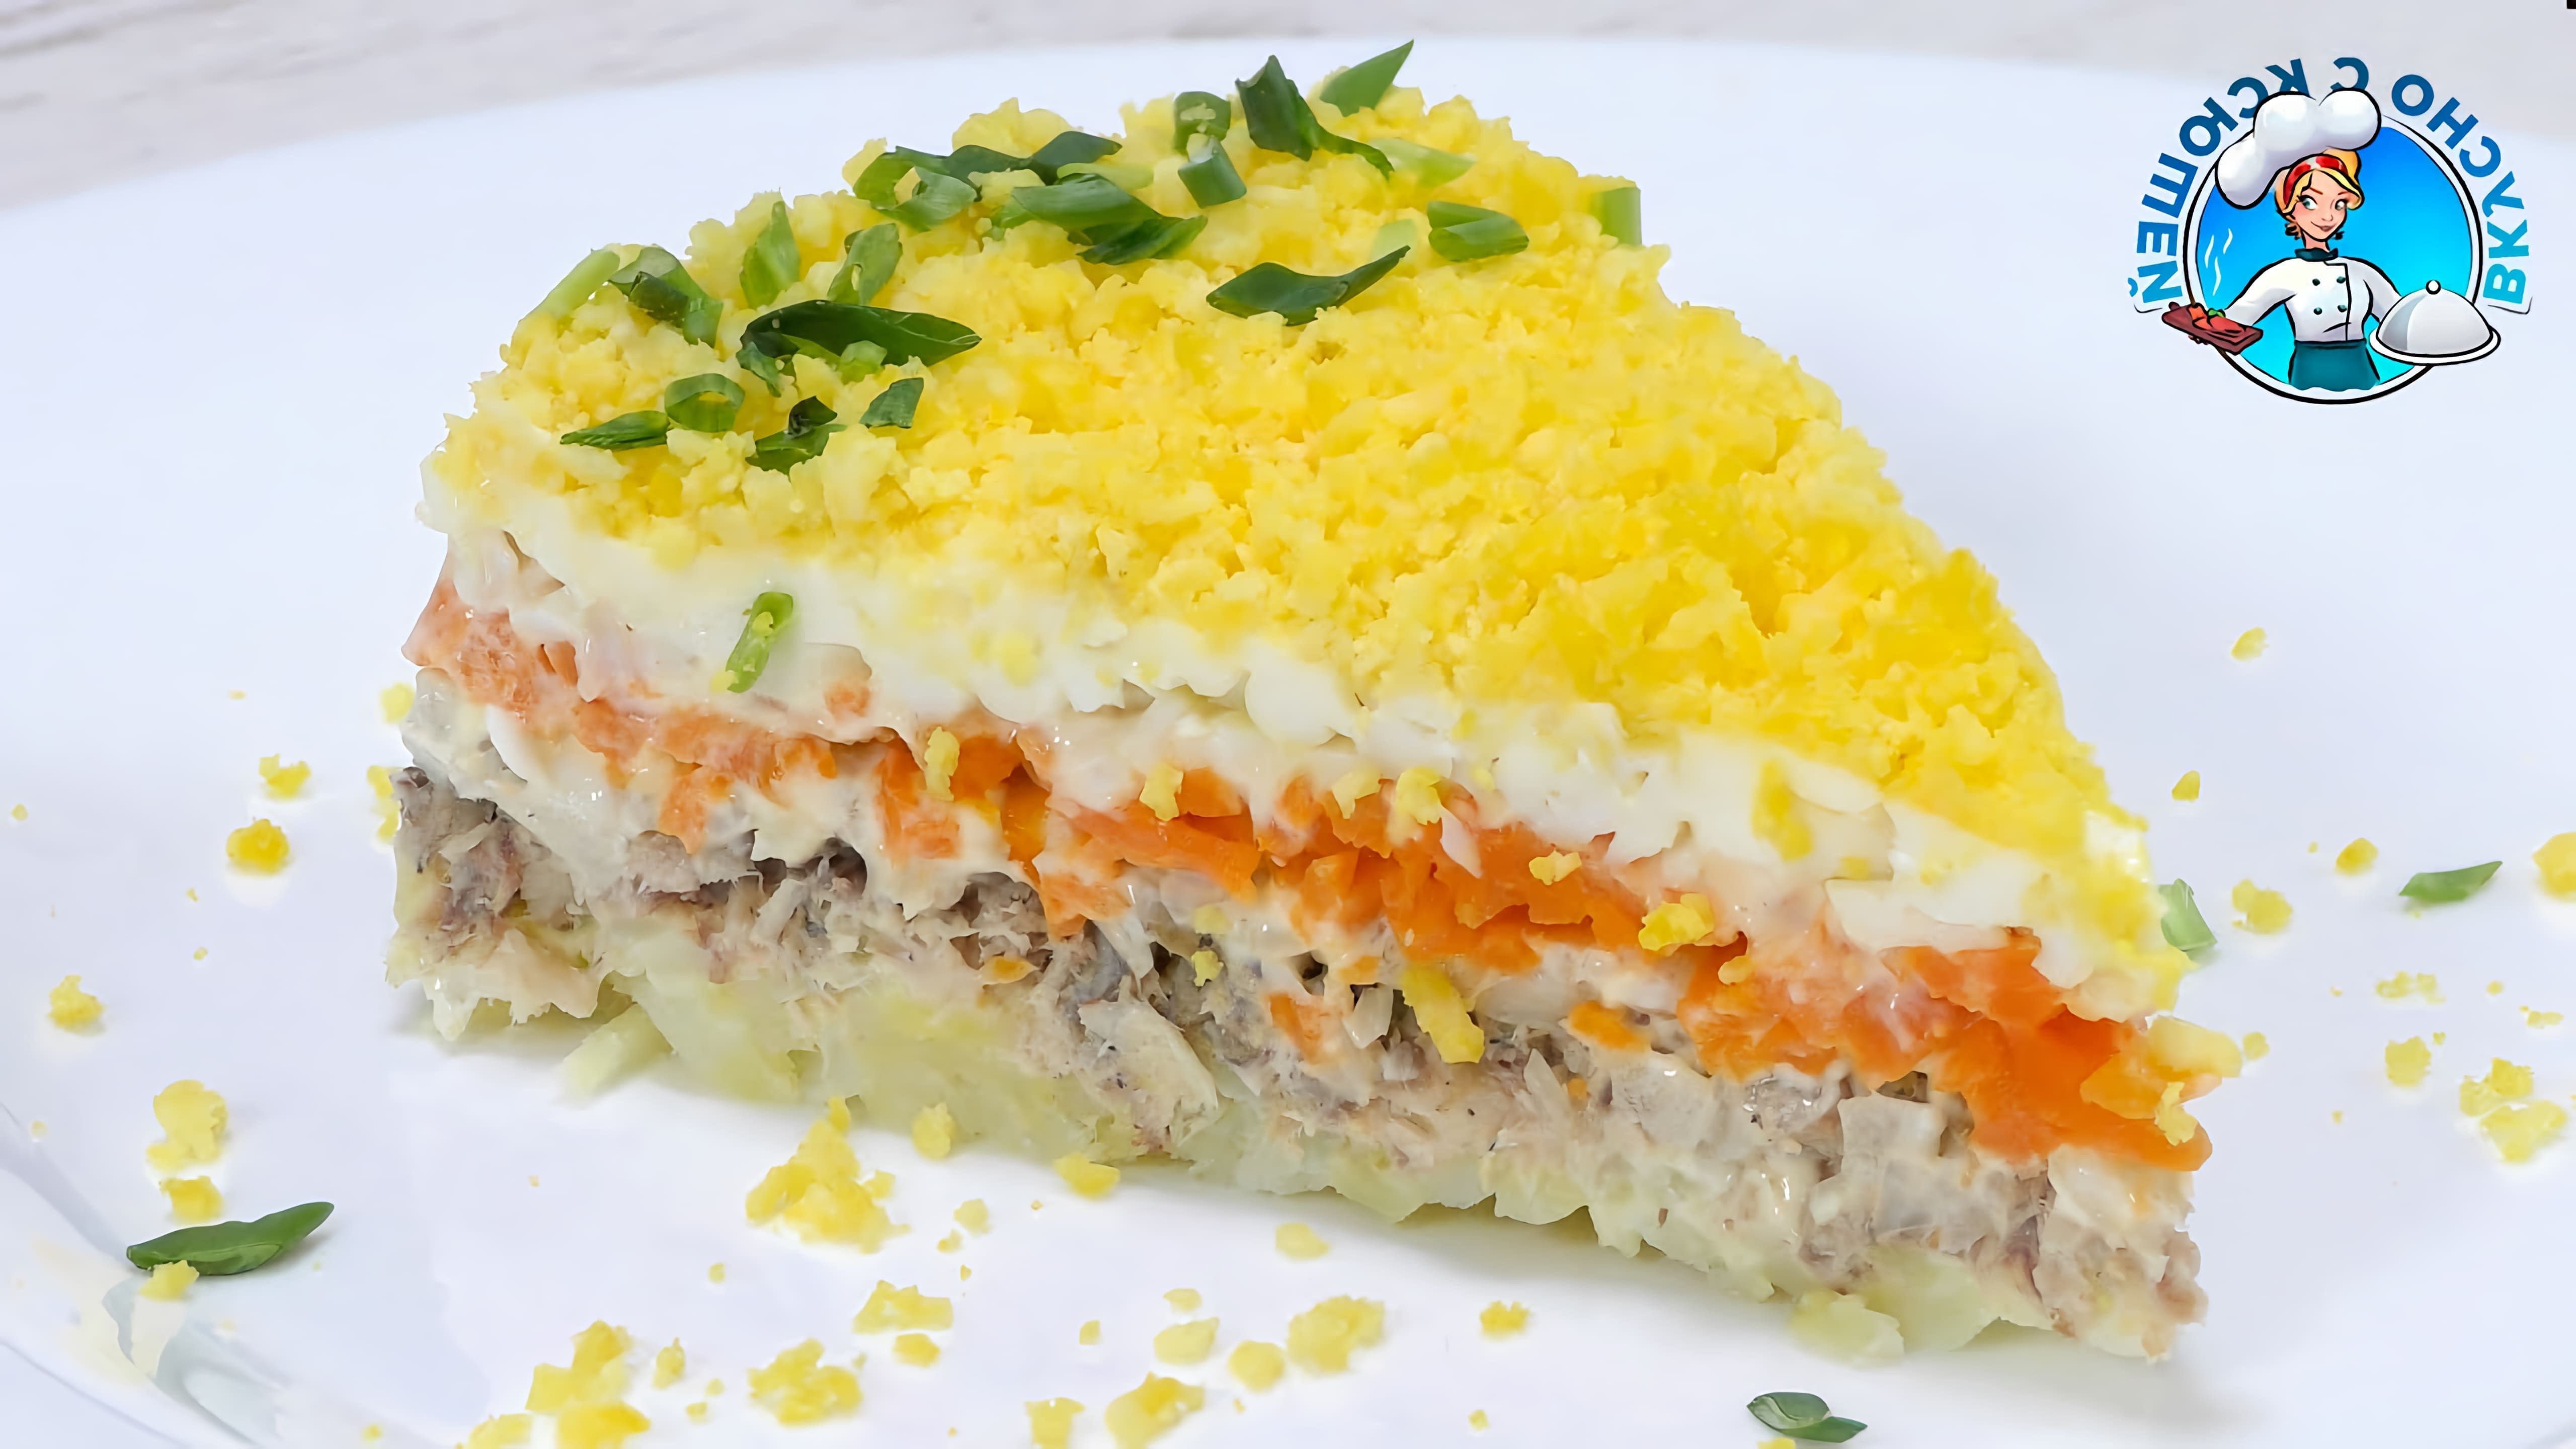 В этом видео демонстрируется рецепт приготовления слоёного салата "Мимоза" с рыбной консервацией из скумбрии